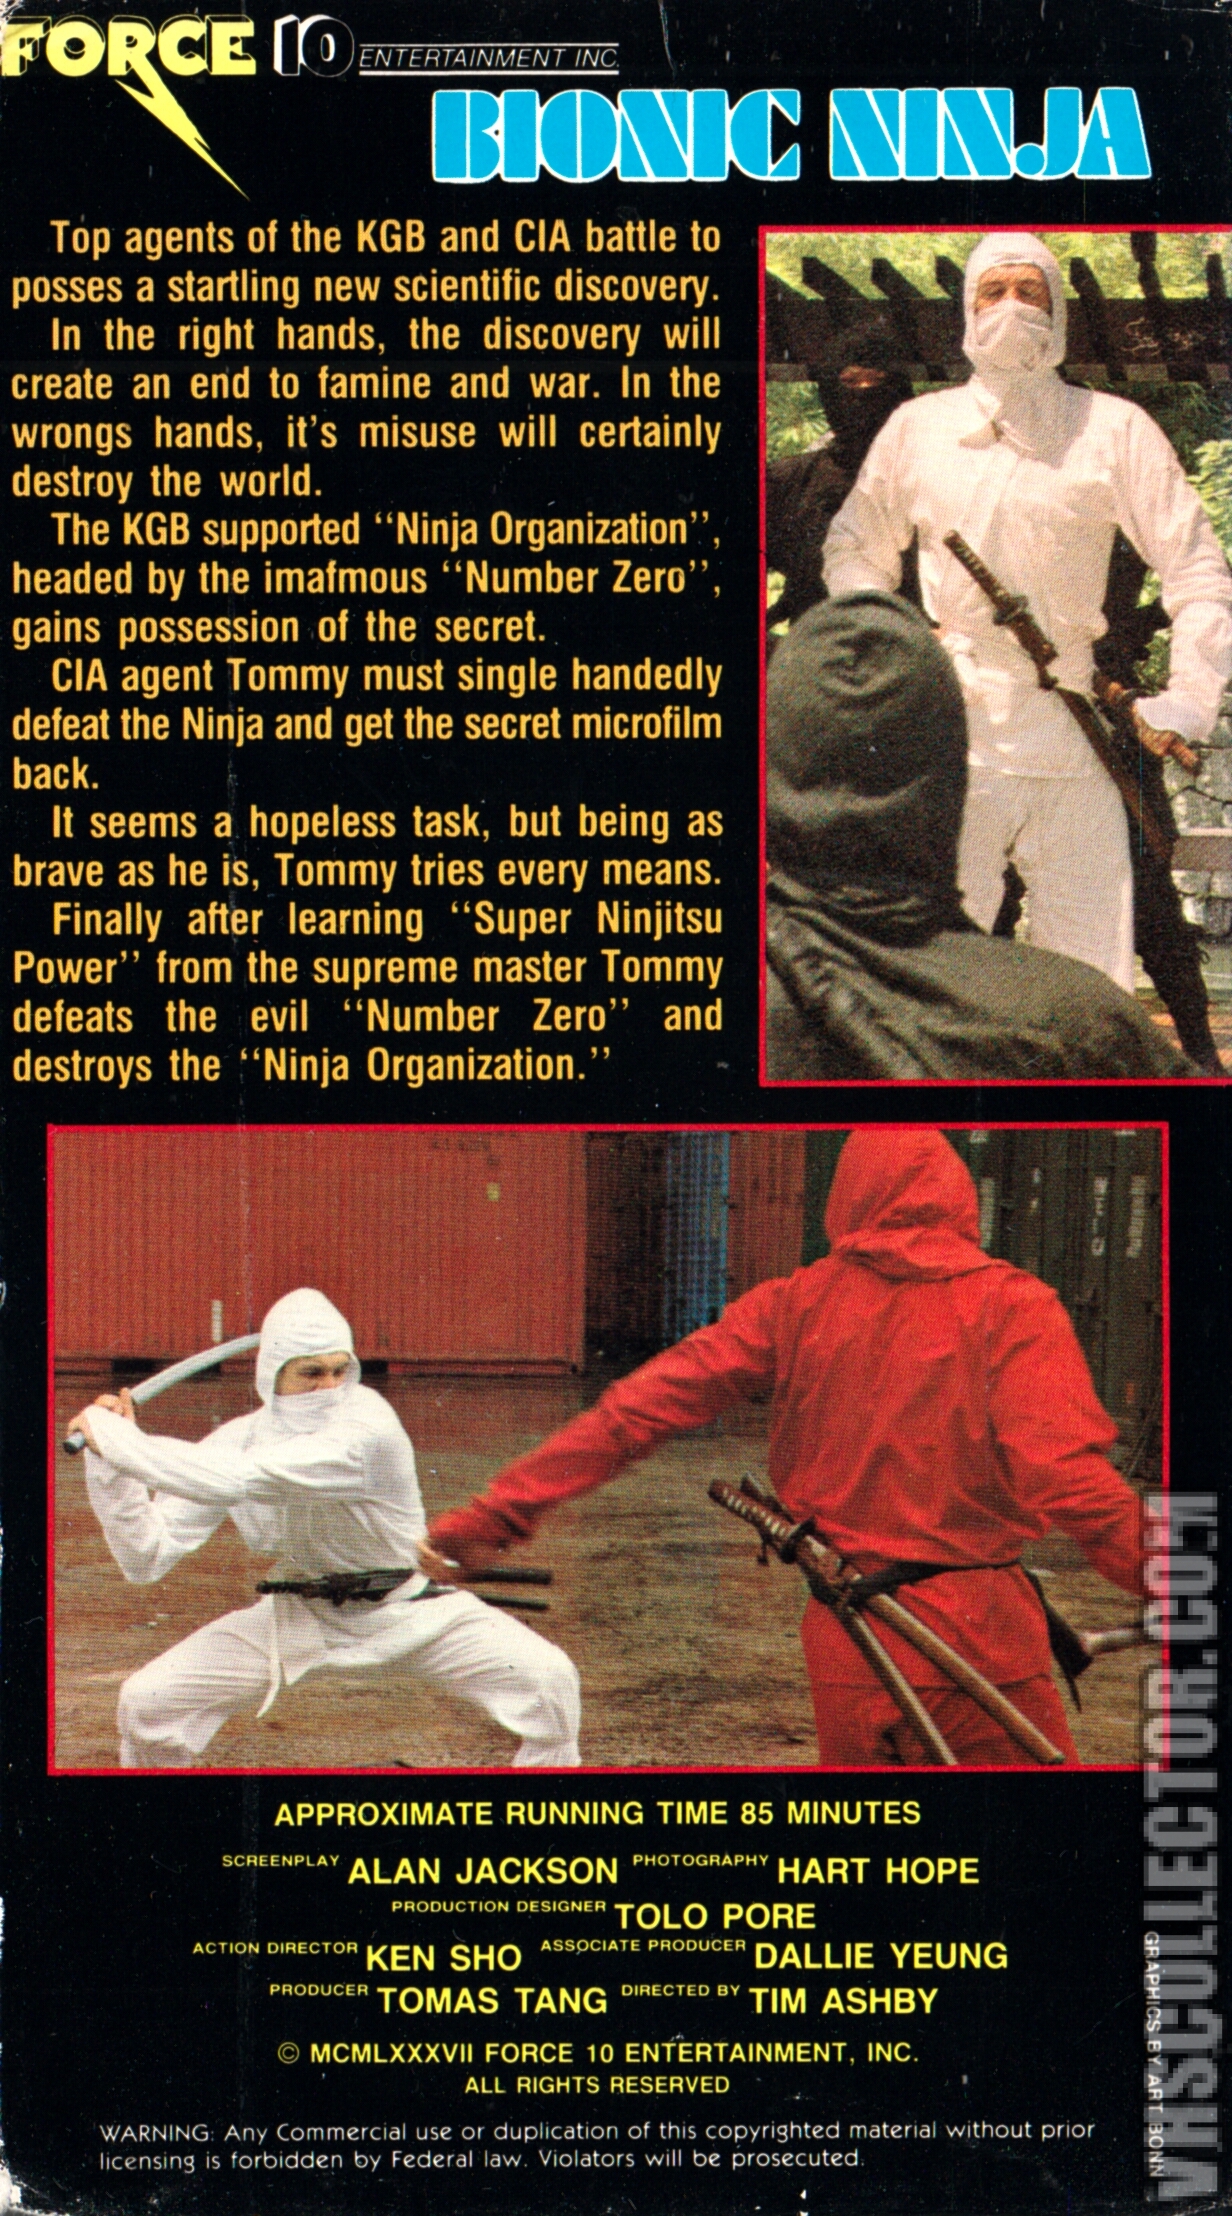 Bionic Ninja (1985) - IMDb